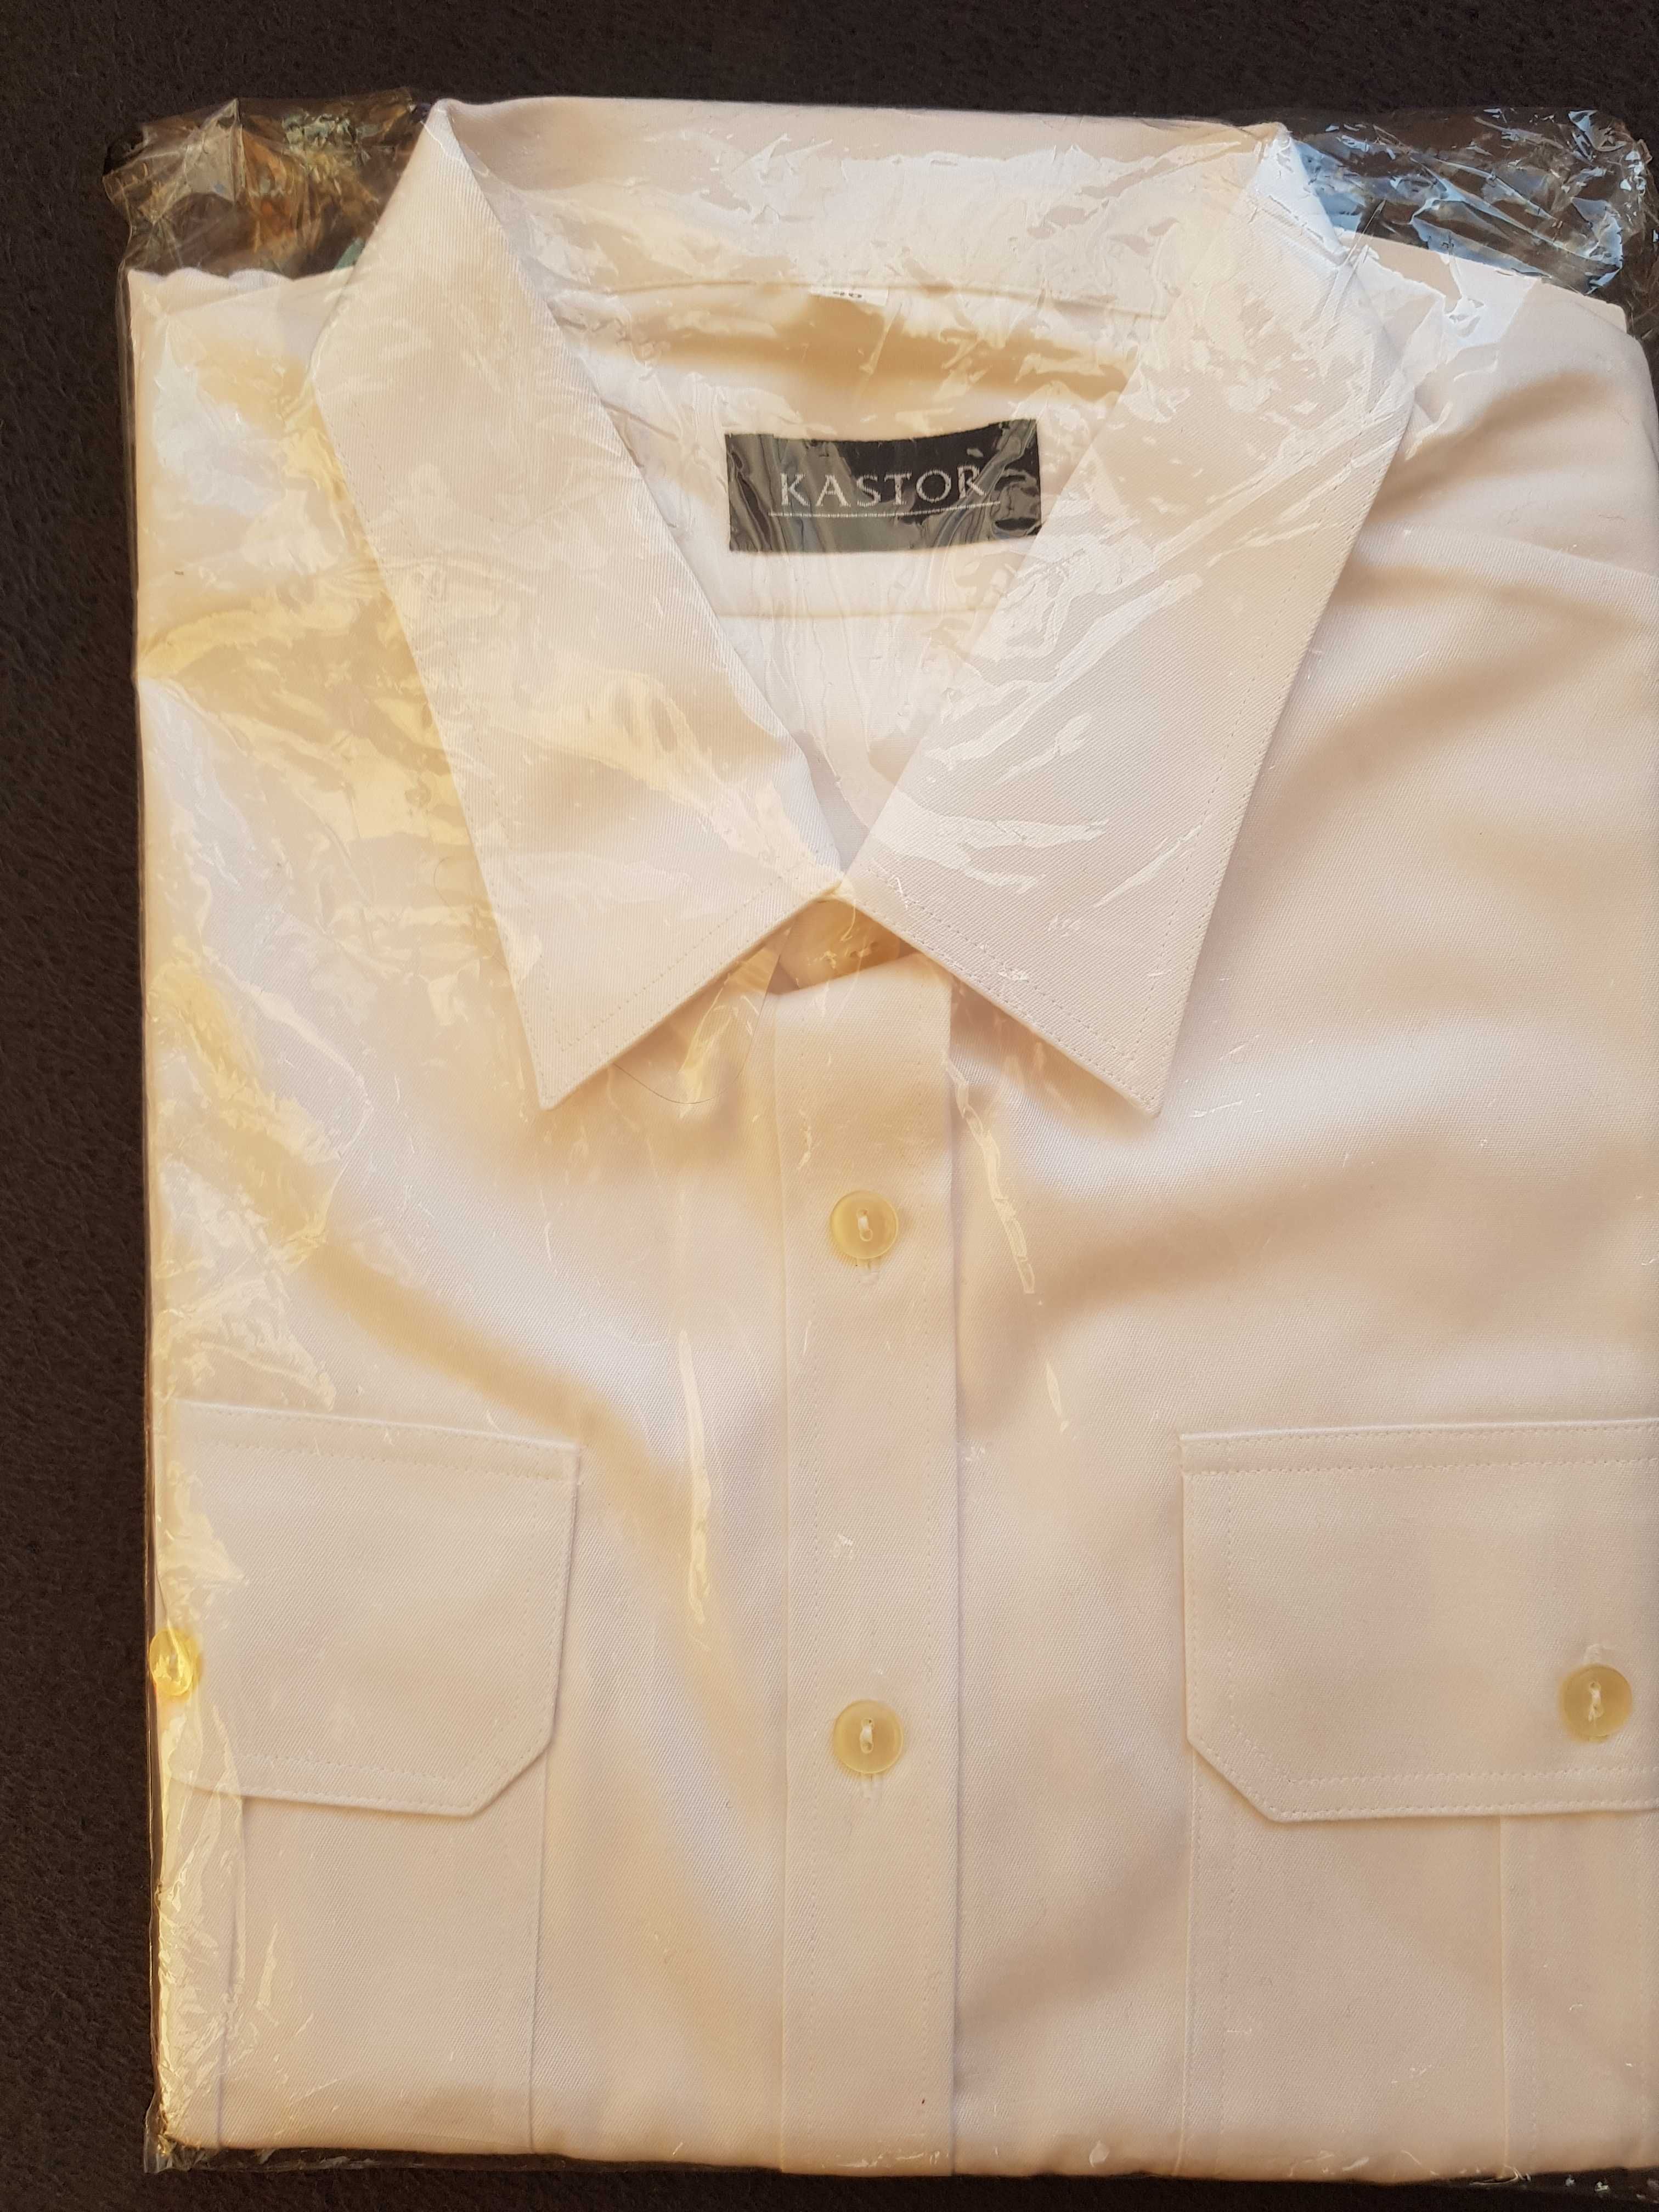 Nowa koszula biała firmy KASTOR krótki rękaw roz. 46 na 180 cm.